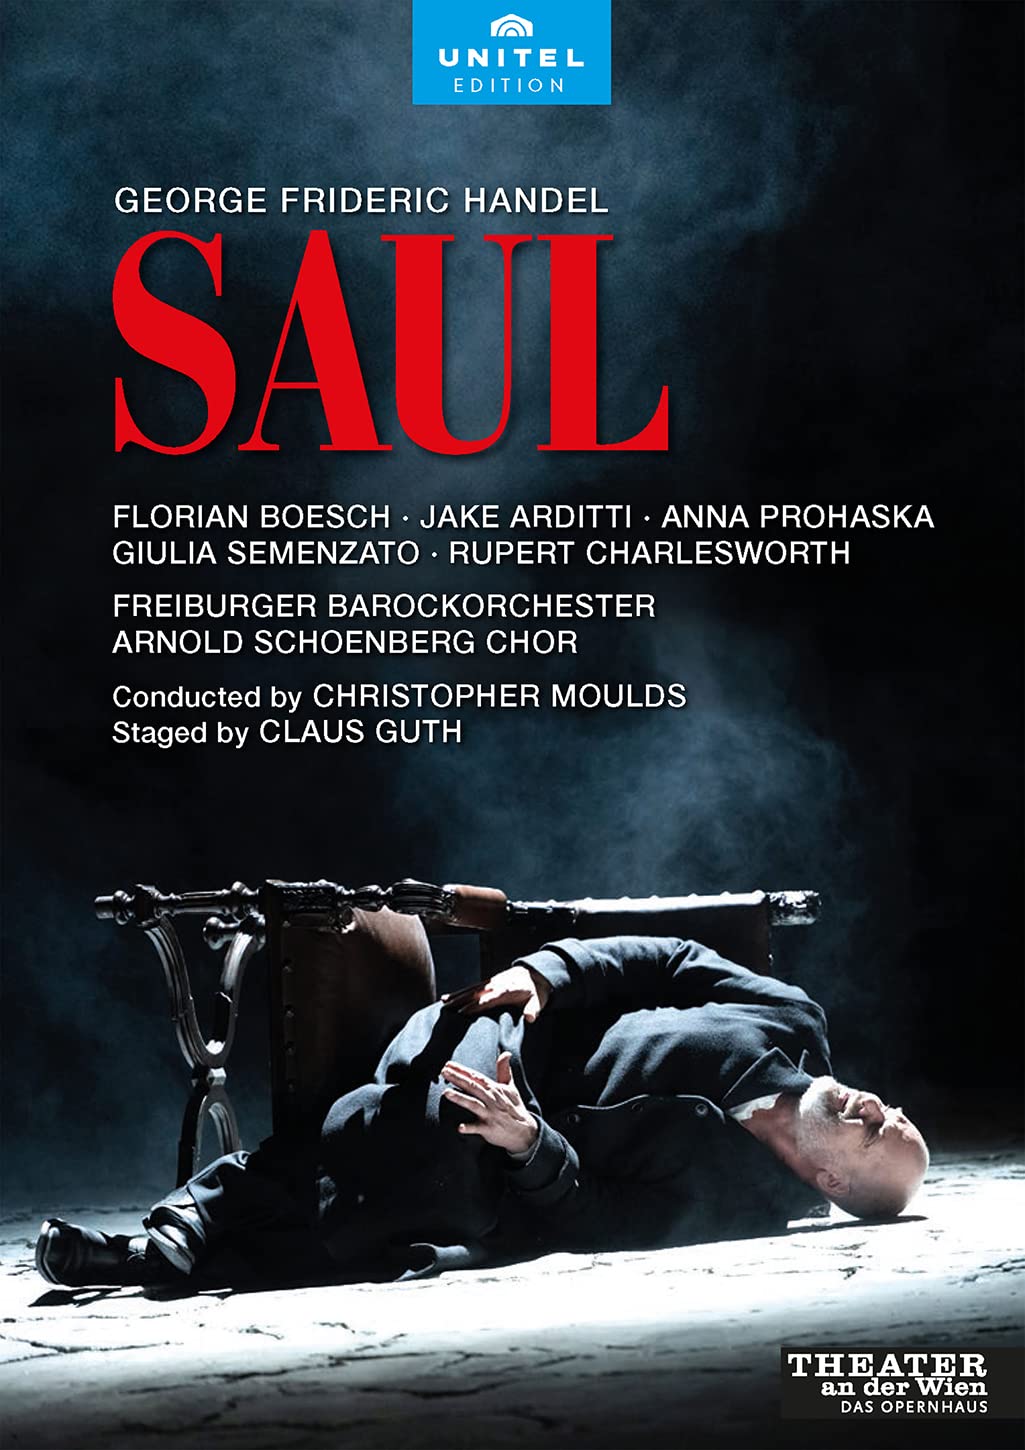 Music Dvd Georg Friedrich Handel - Saul (2 Dvd) NUOVO SIGILLATO, EDIZIONE DEL 11/02/2022 SUBITO DISPONIBILE